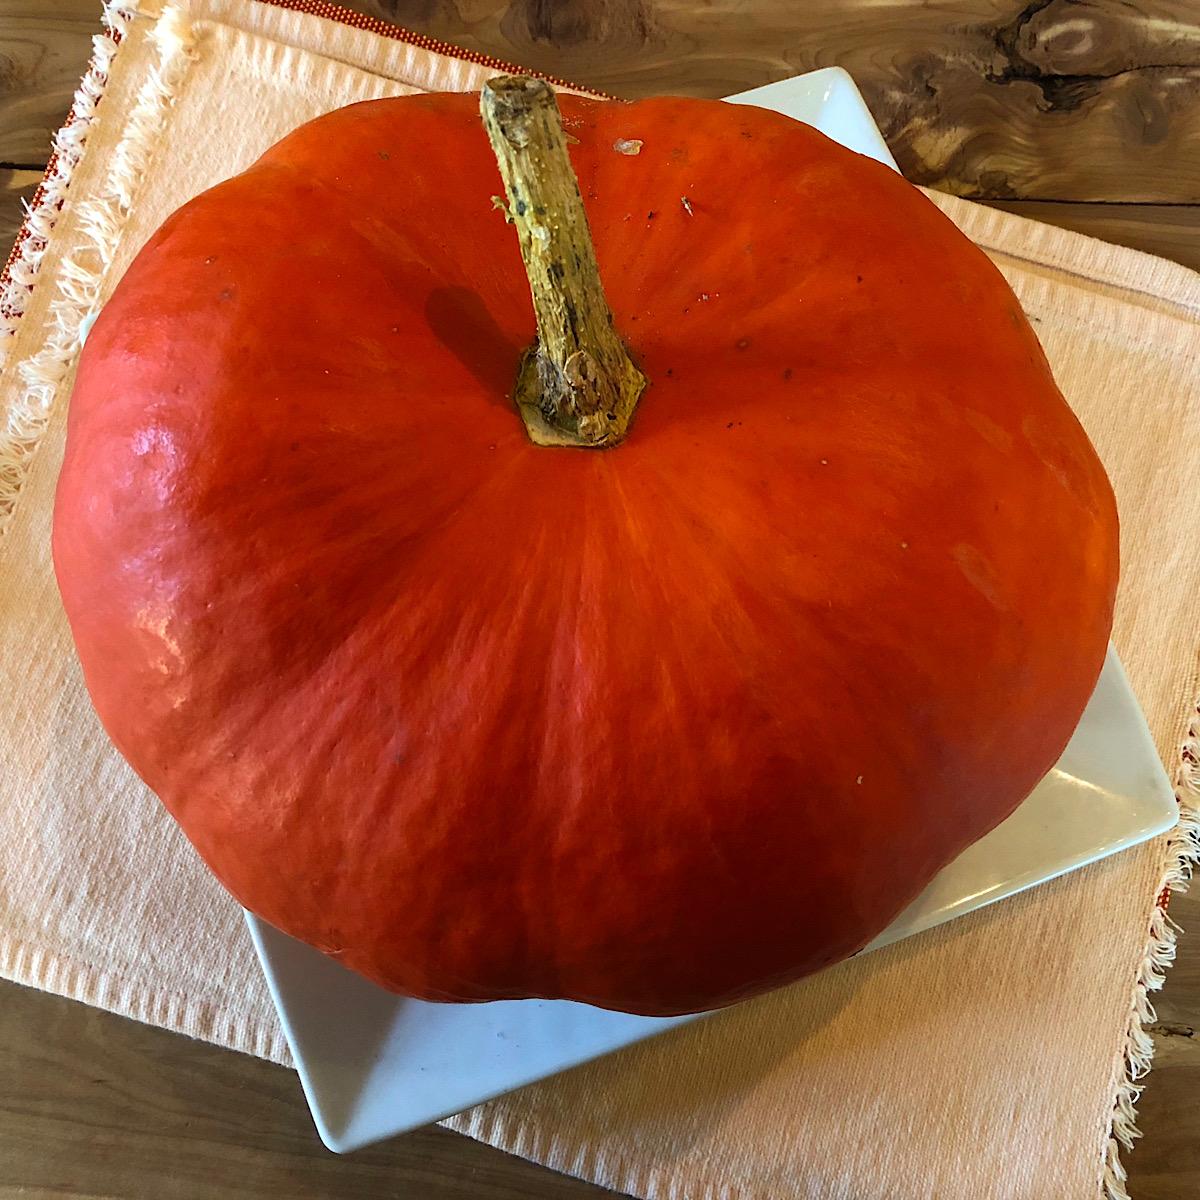 Heirloom pumpkin called Rouge d’entemps